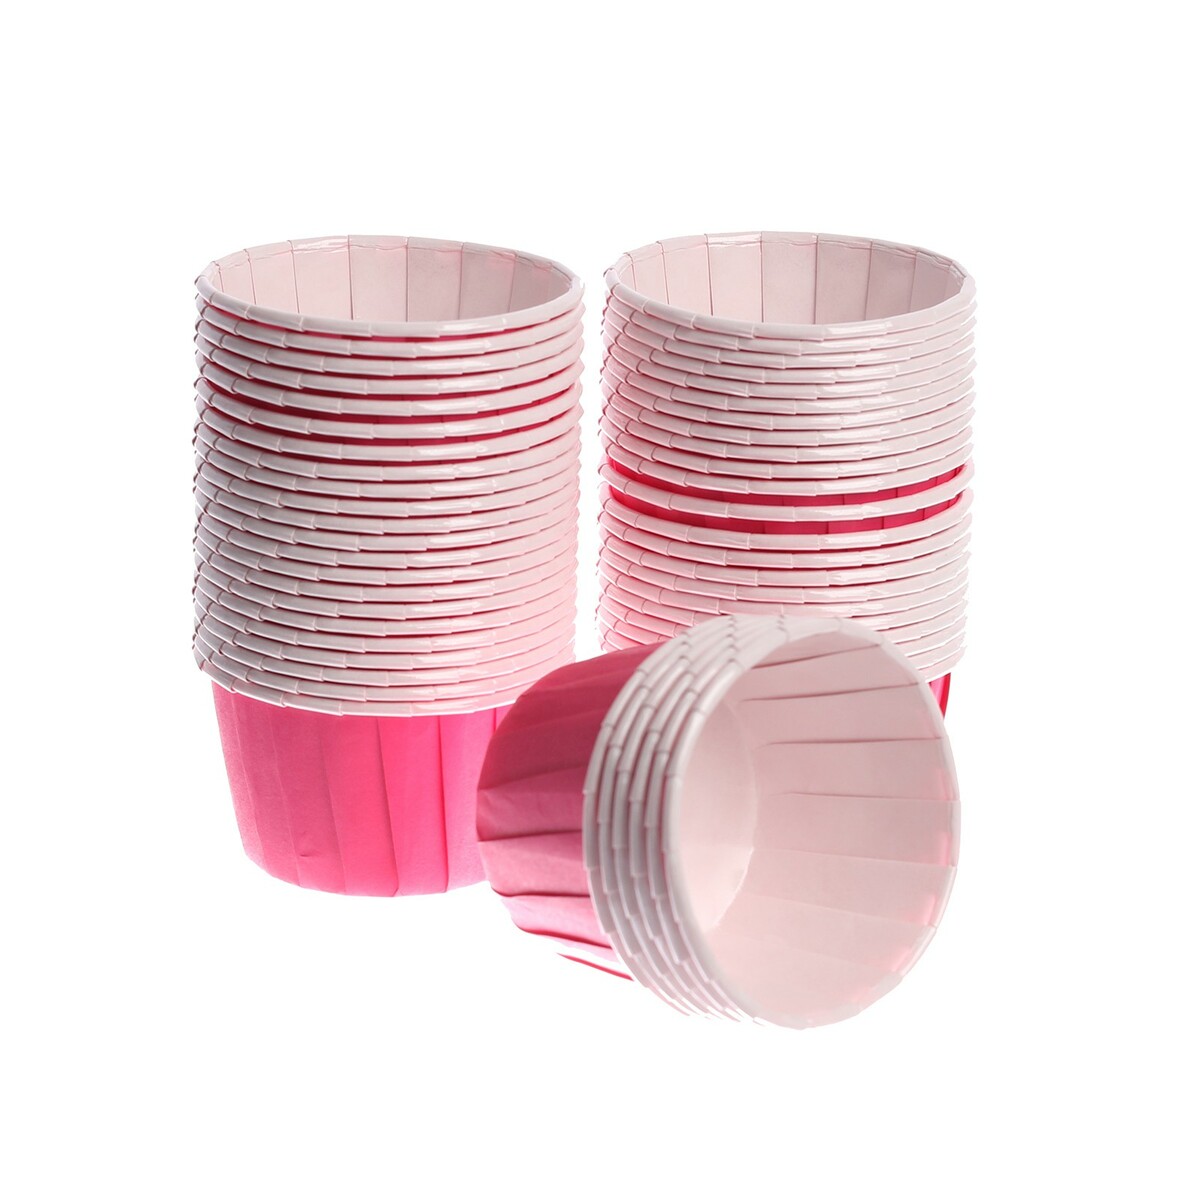 Тарталетка для кексов, набор, 50 шт., цвет розовый набор бумажных форм для кексов красный узор диаметр дна 5 см 50 шт